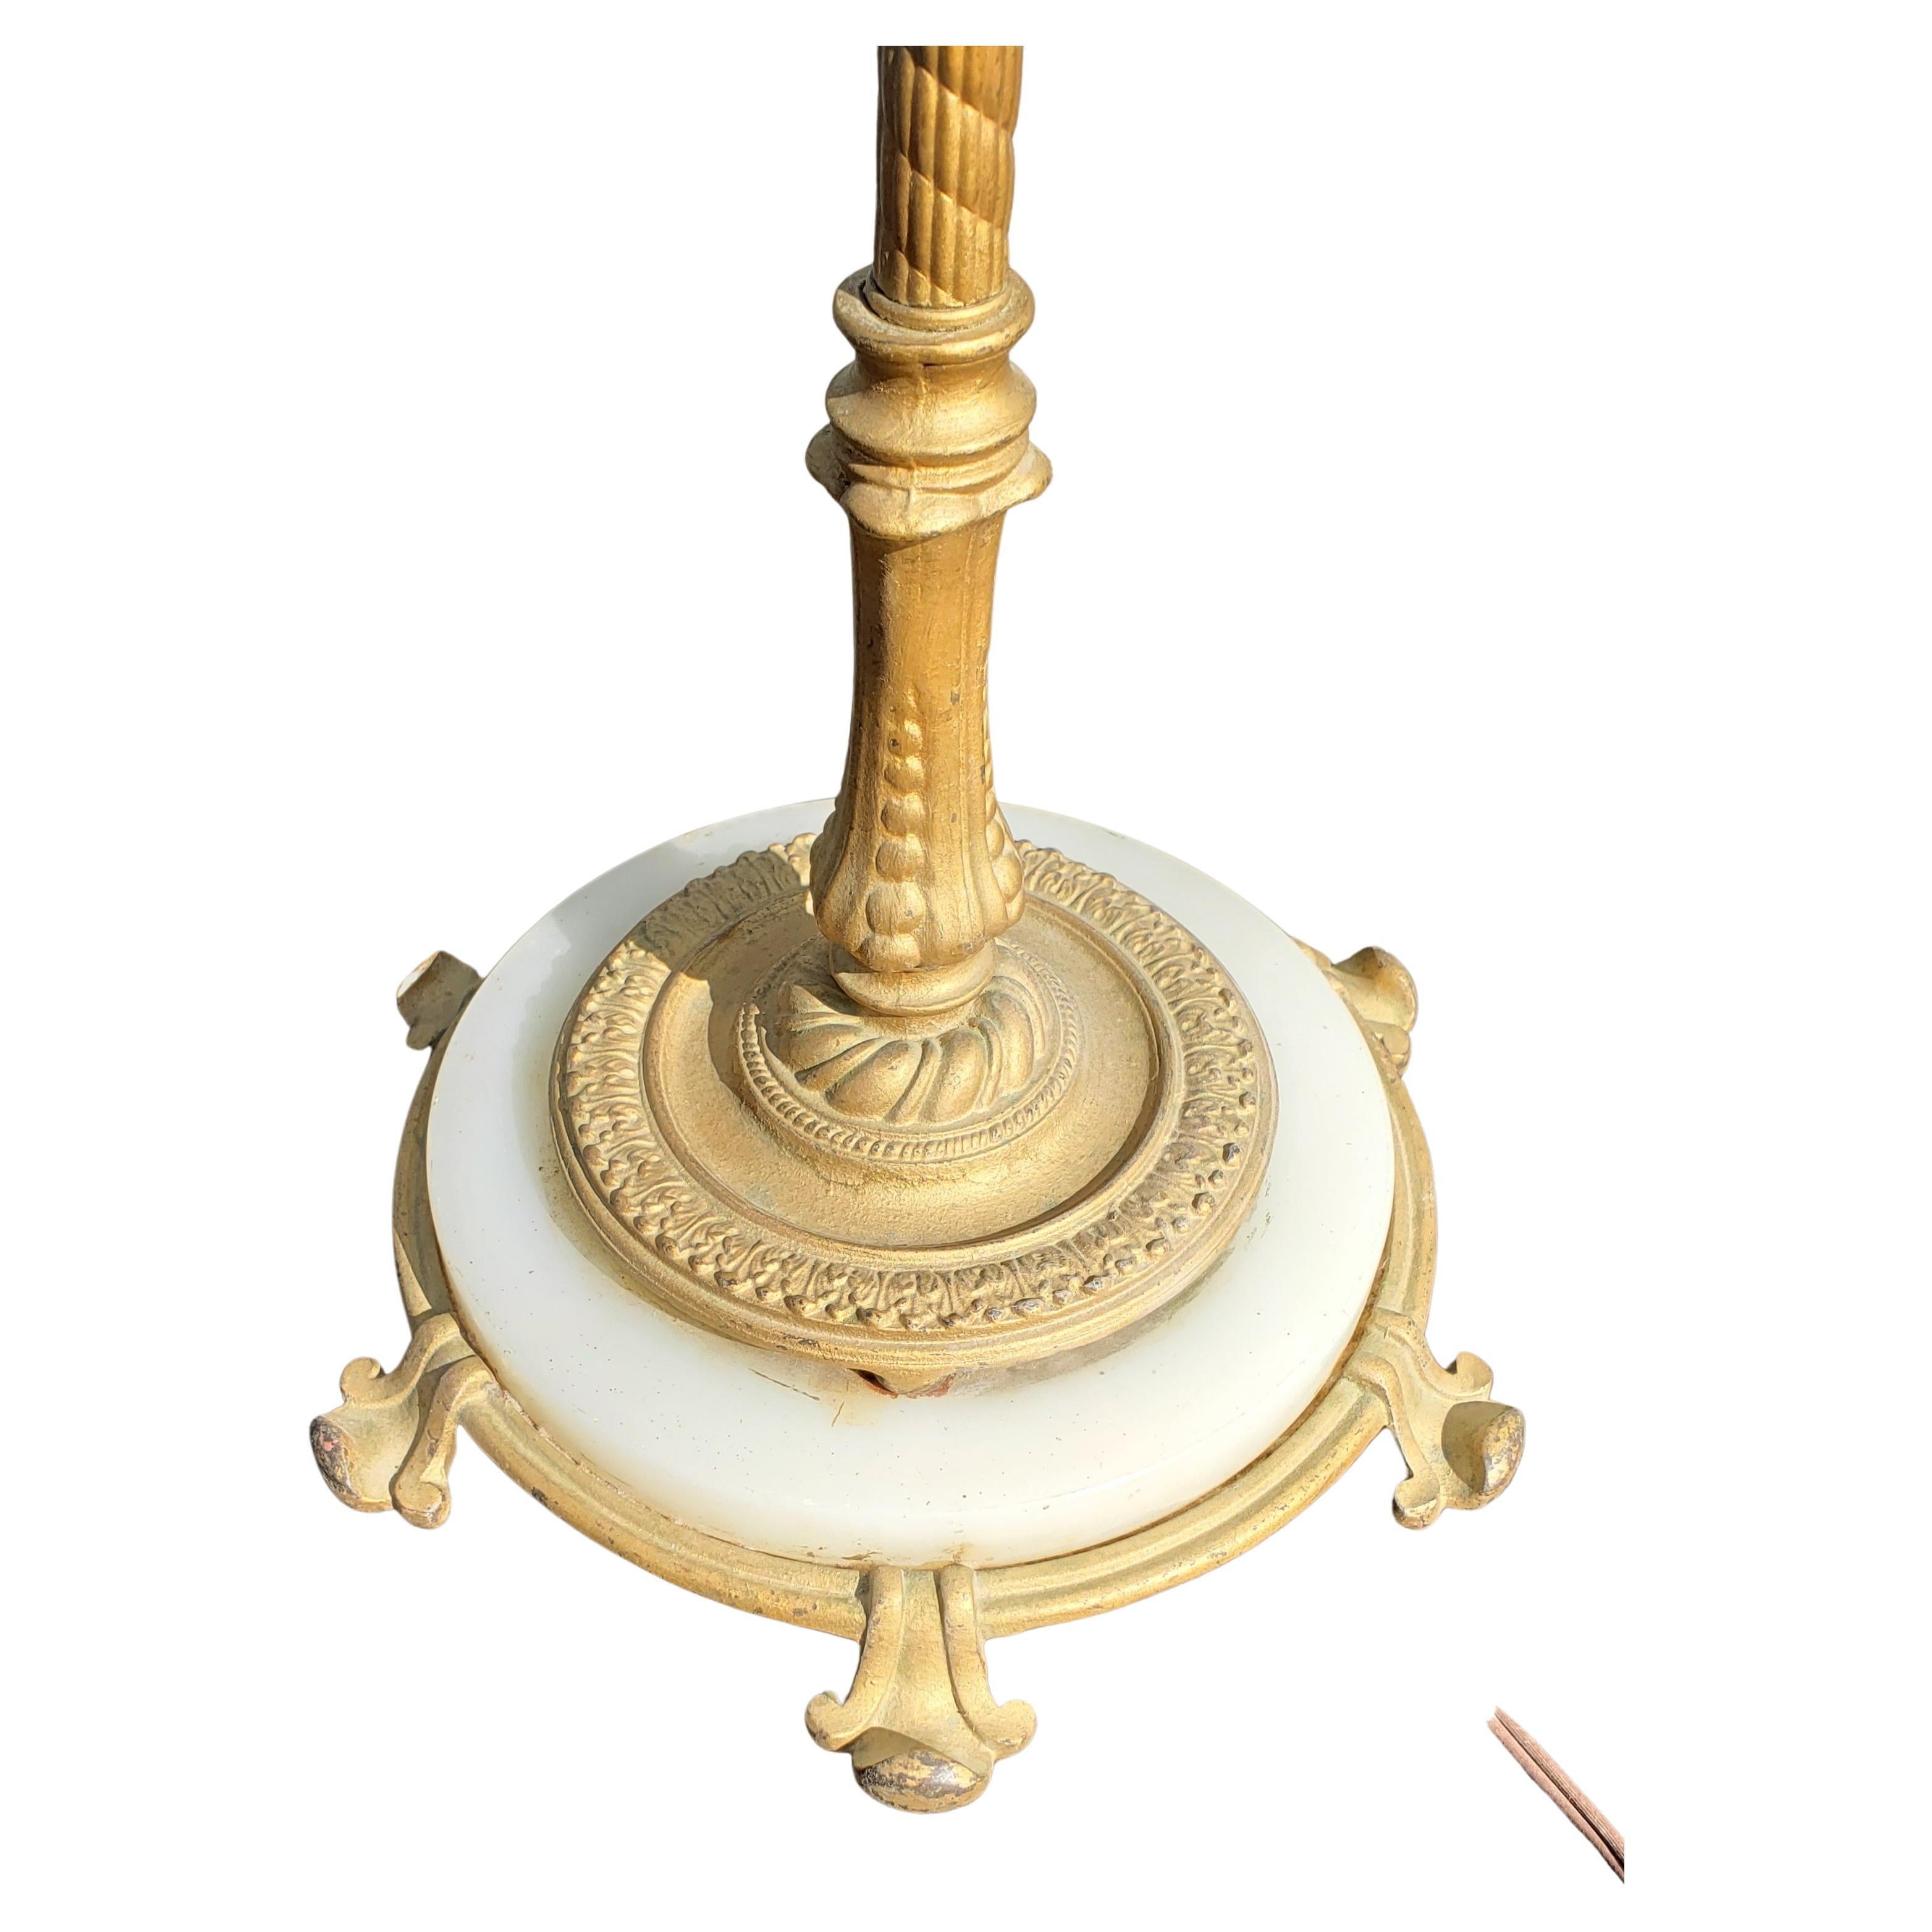 Nous vous proposons ce magnifique lampadaire ancien en fonte dorée et en pierre d'onyx. Cette magnifique pièce mesure 64,5 pouces de haut et 11 pouces de diamètre à la base. Il s'agit d'une pièce solide qui ne tombe pas en panne. La base et le corps